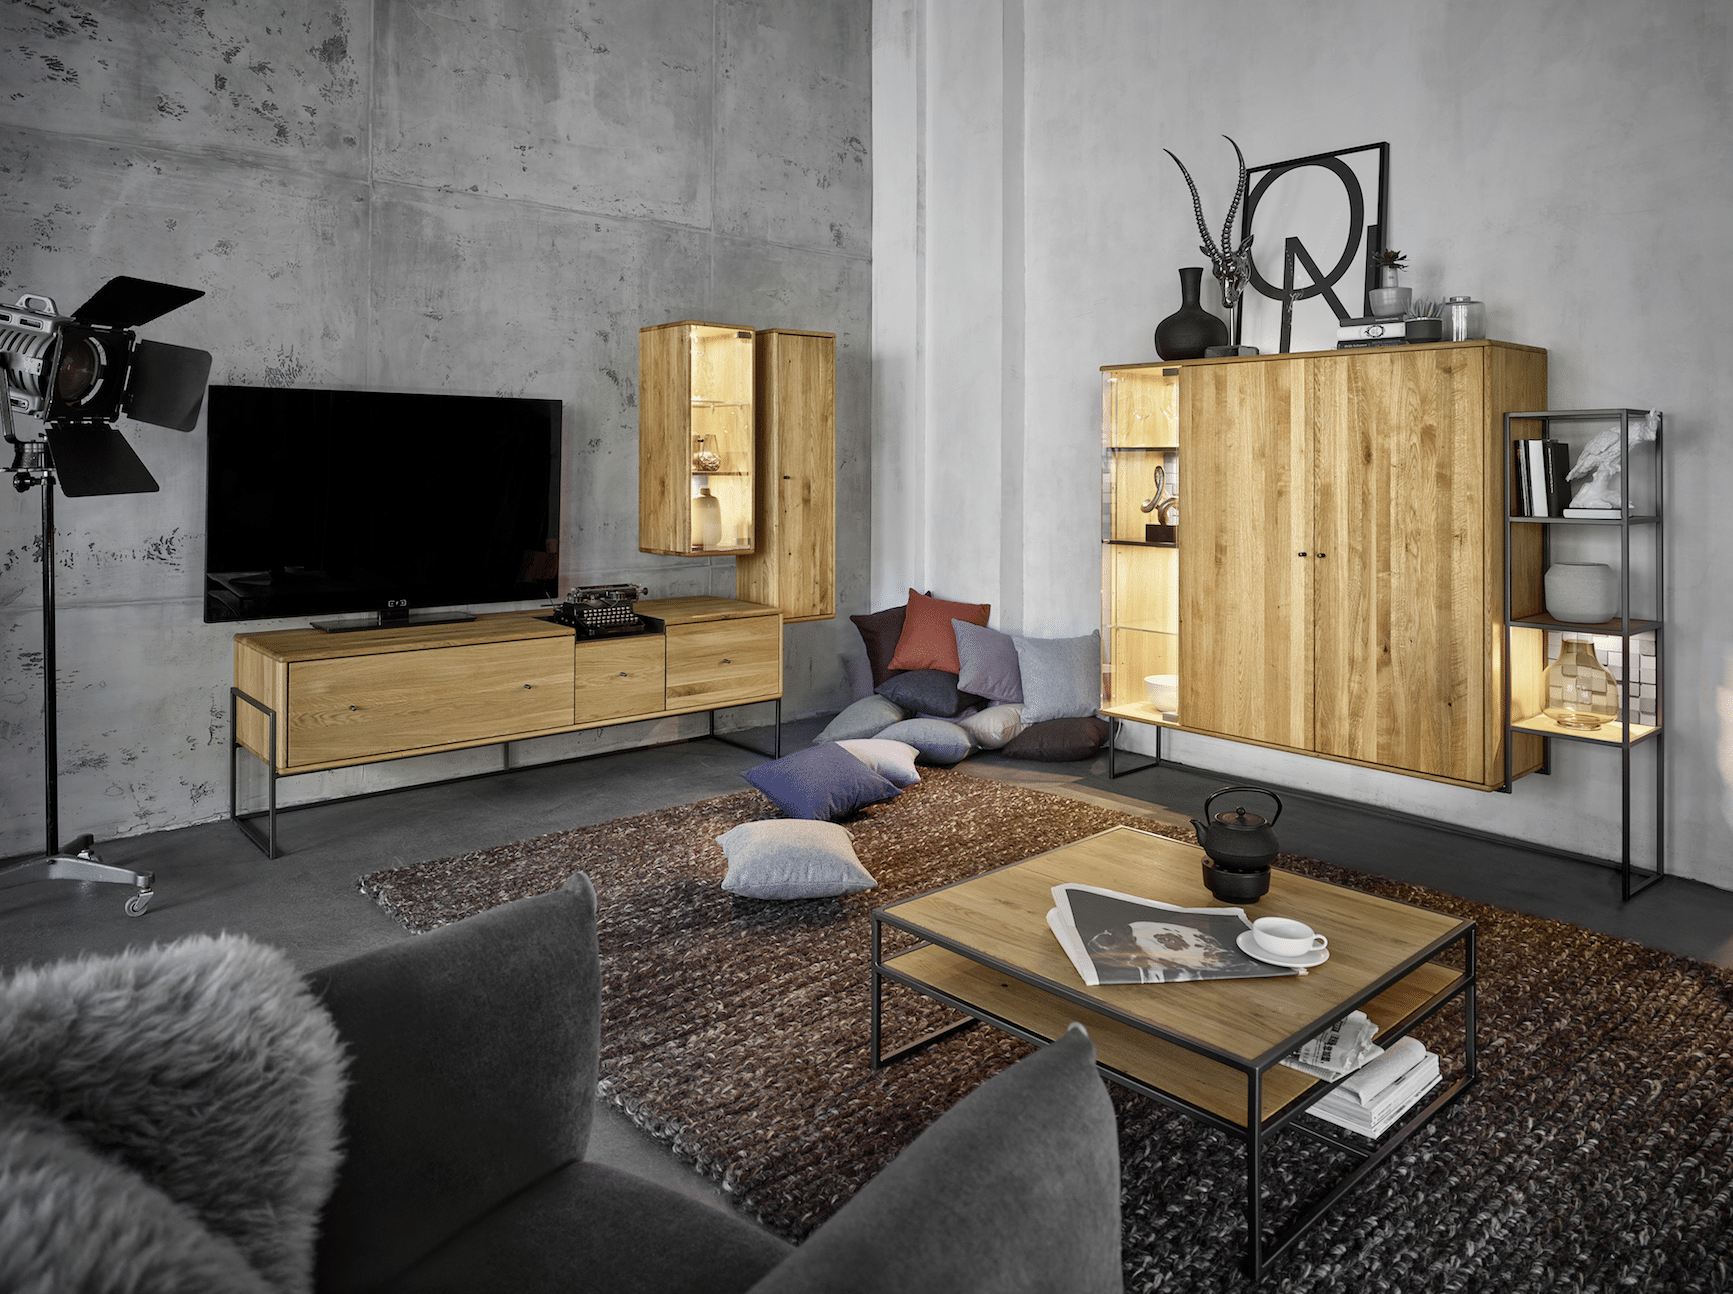 Wohnzimmer im Industrial-Look mit Möbeln von Vencer.